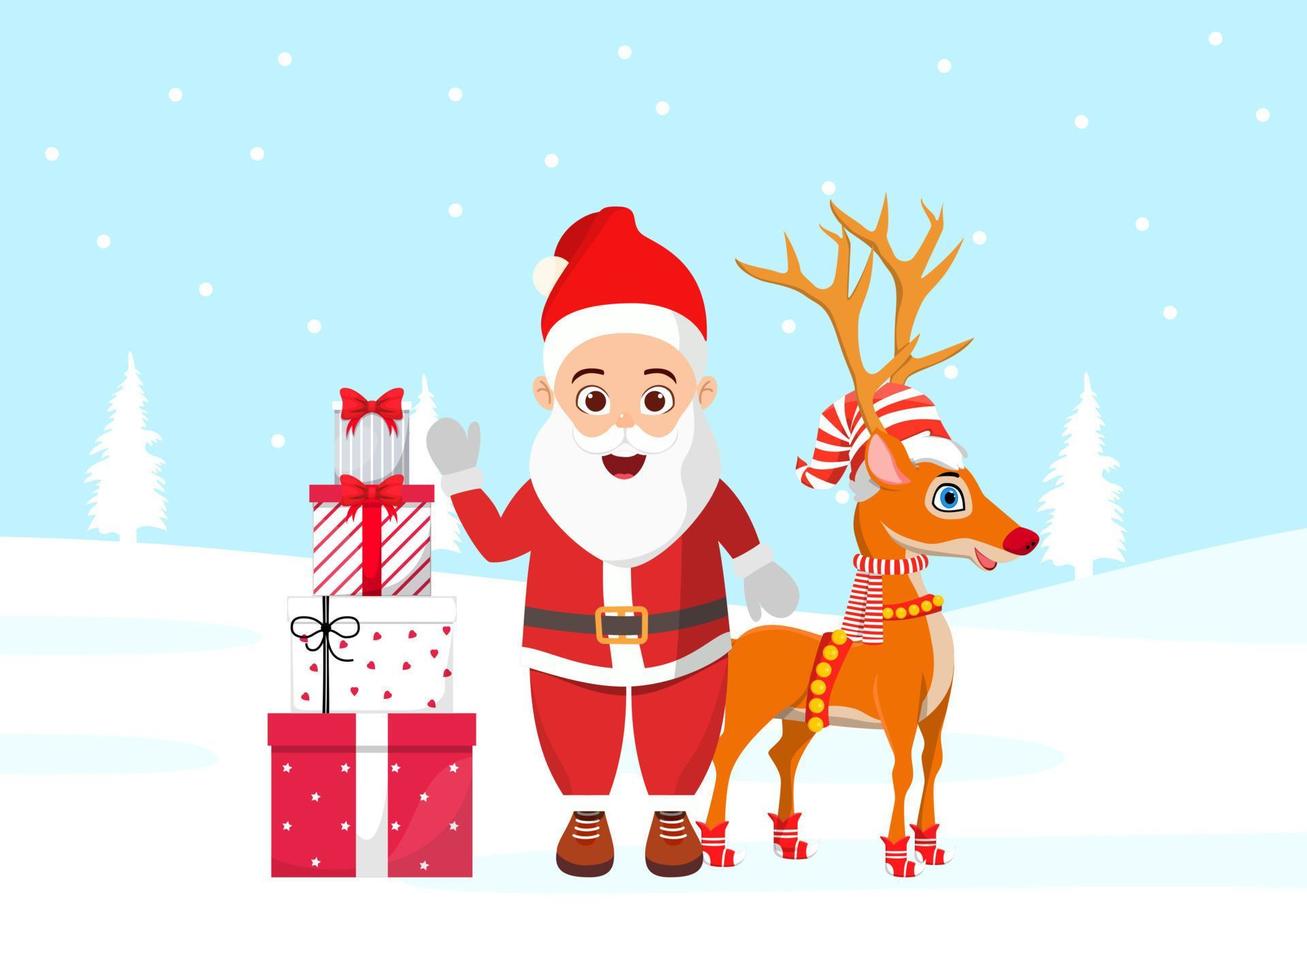 süßer schöner Weihnachtsmann-Charakter und Rentier, die auf einem Schneefeld stehen und ein Weihnachtsoutfit mit Geschenkboxen tragen vektor